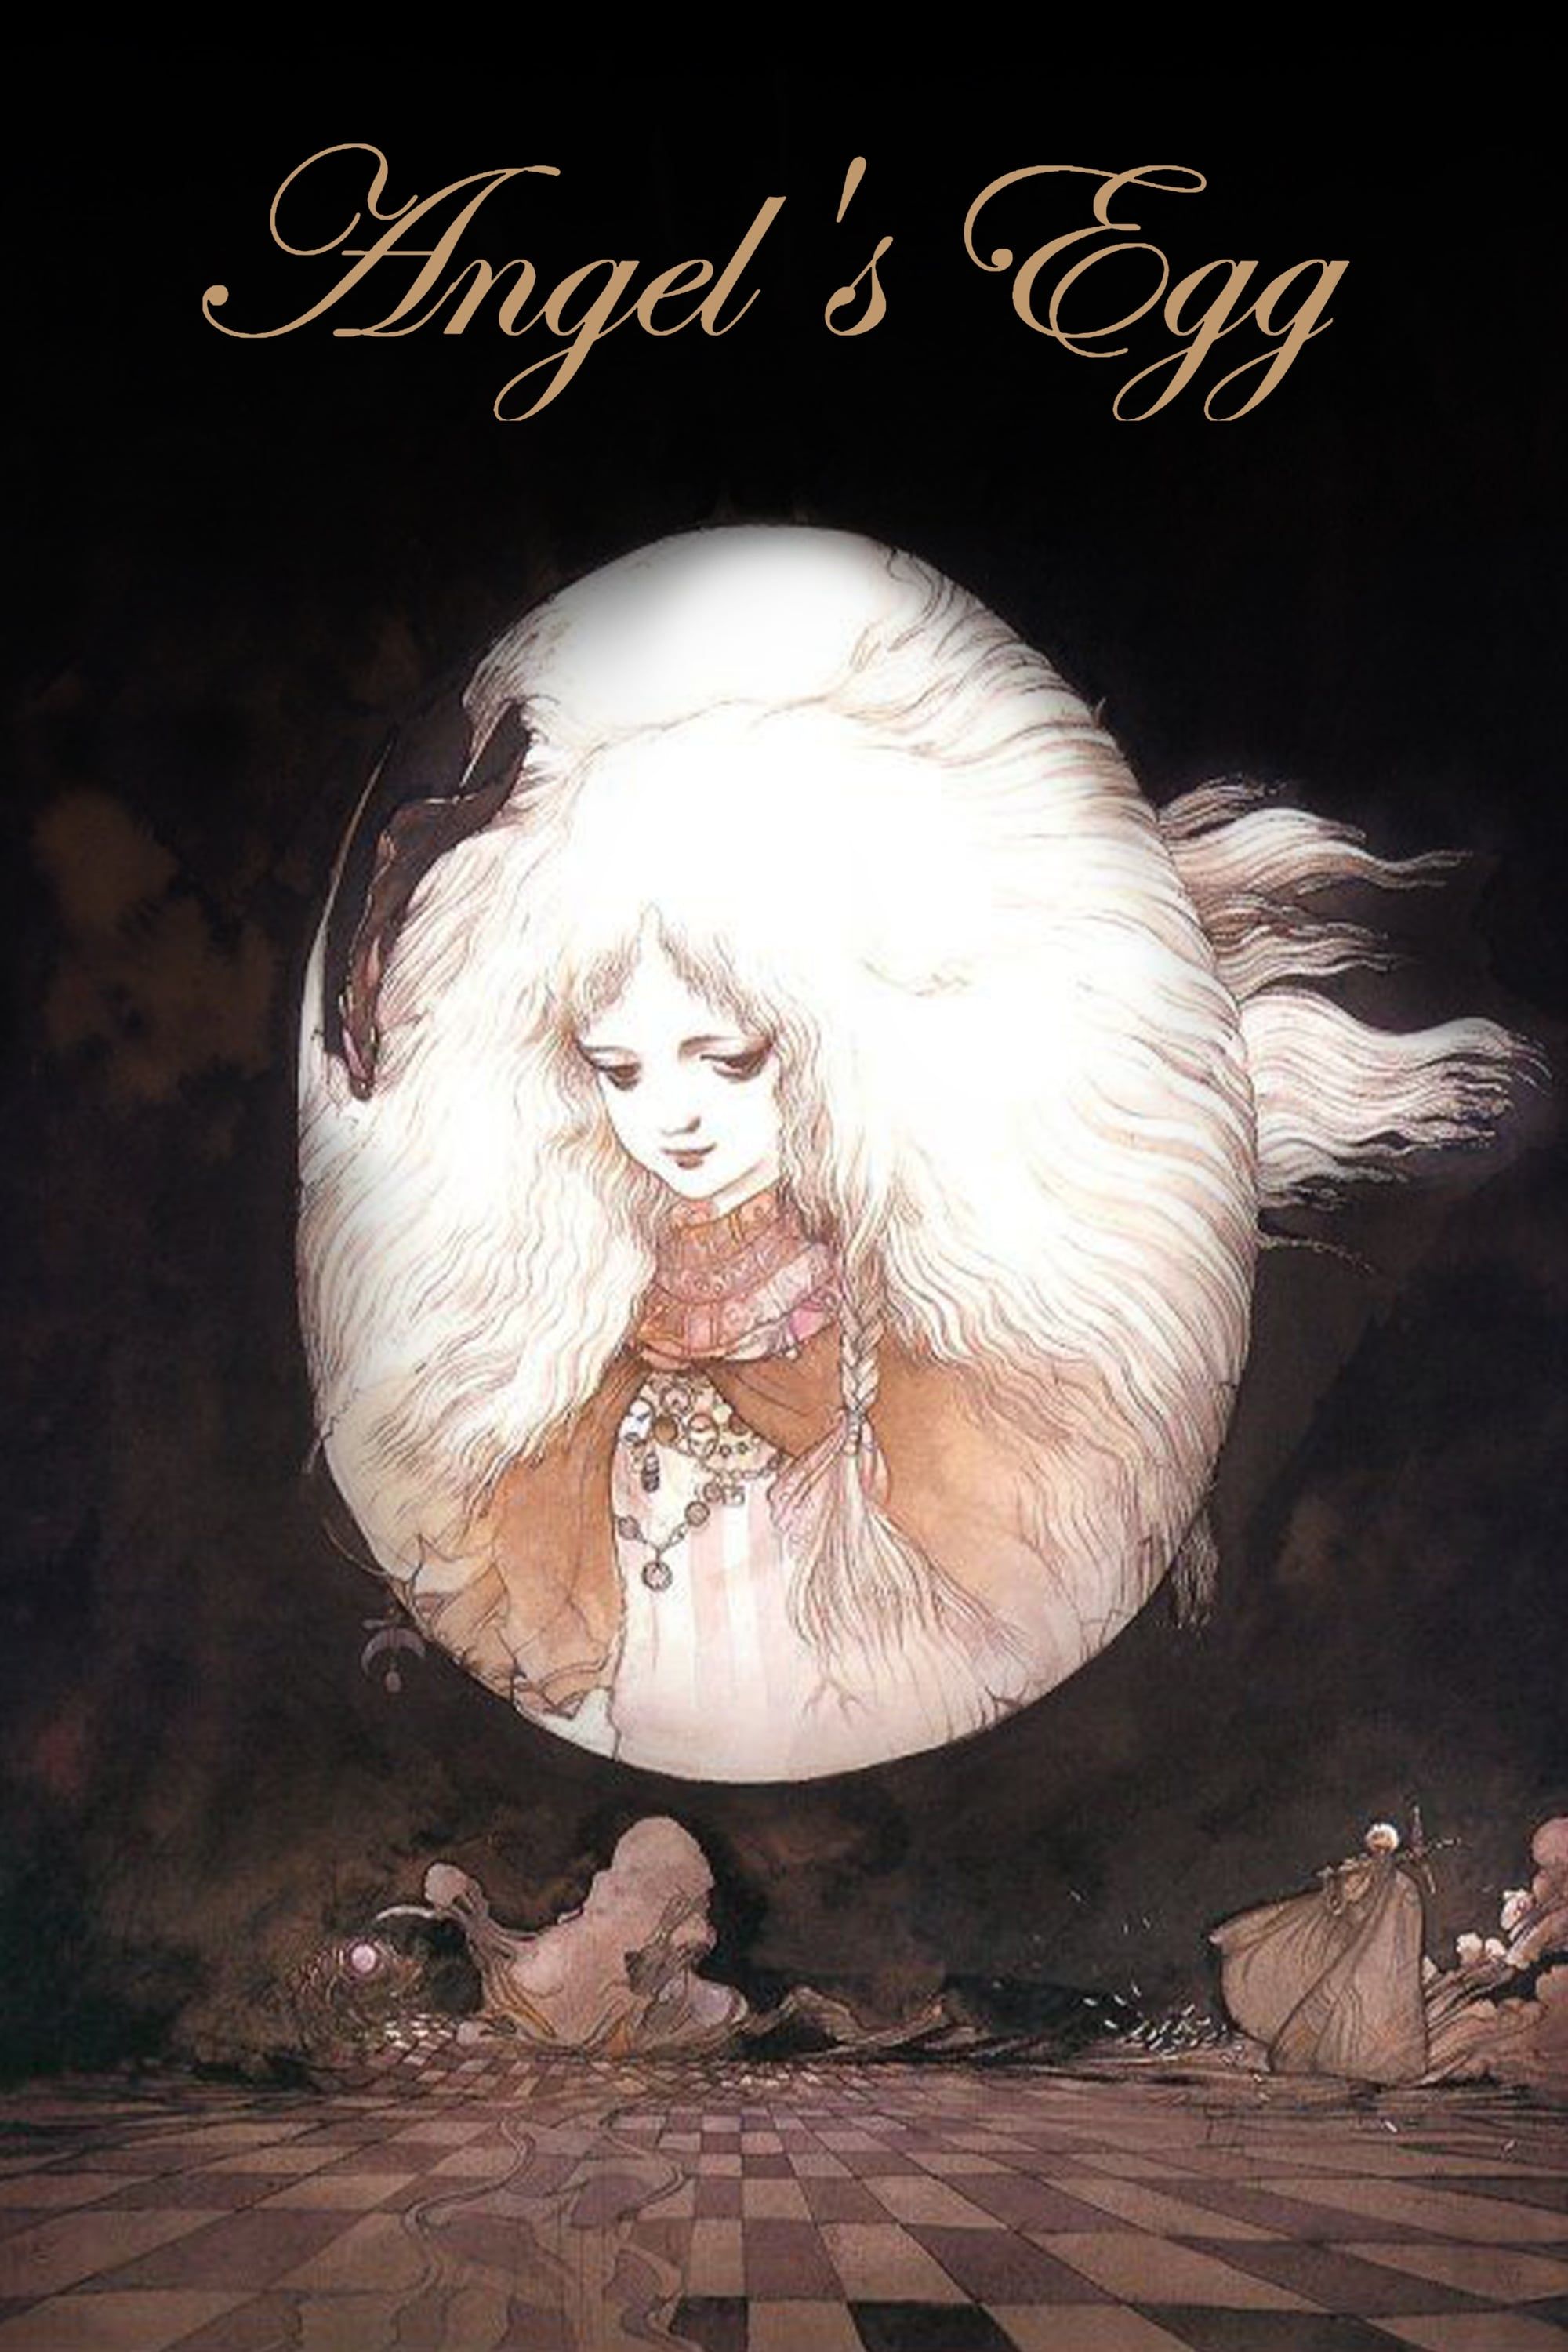 angels-egg-poster